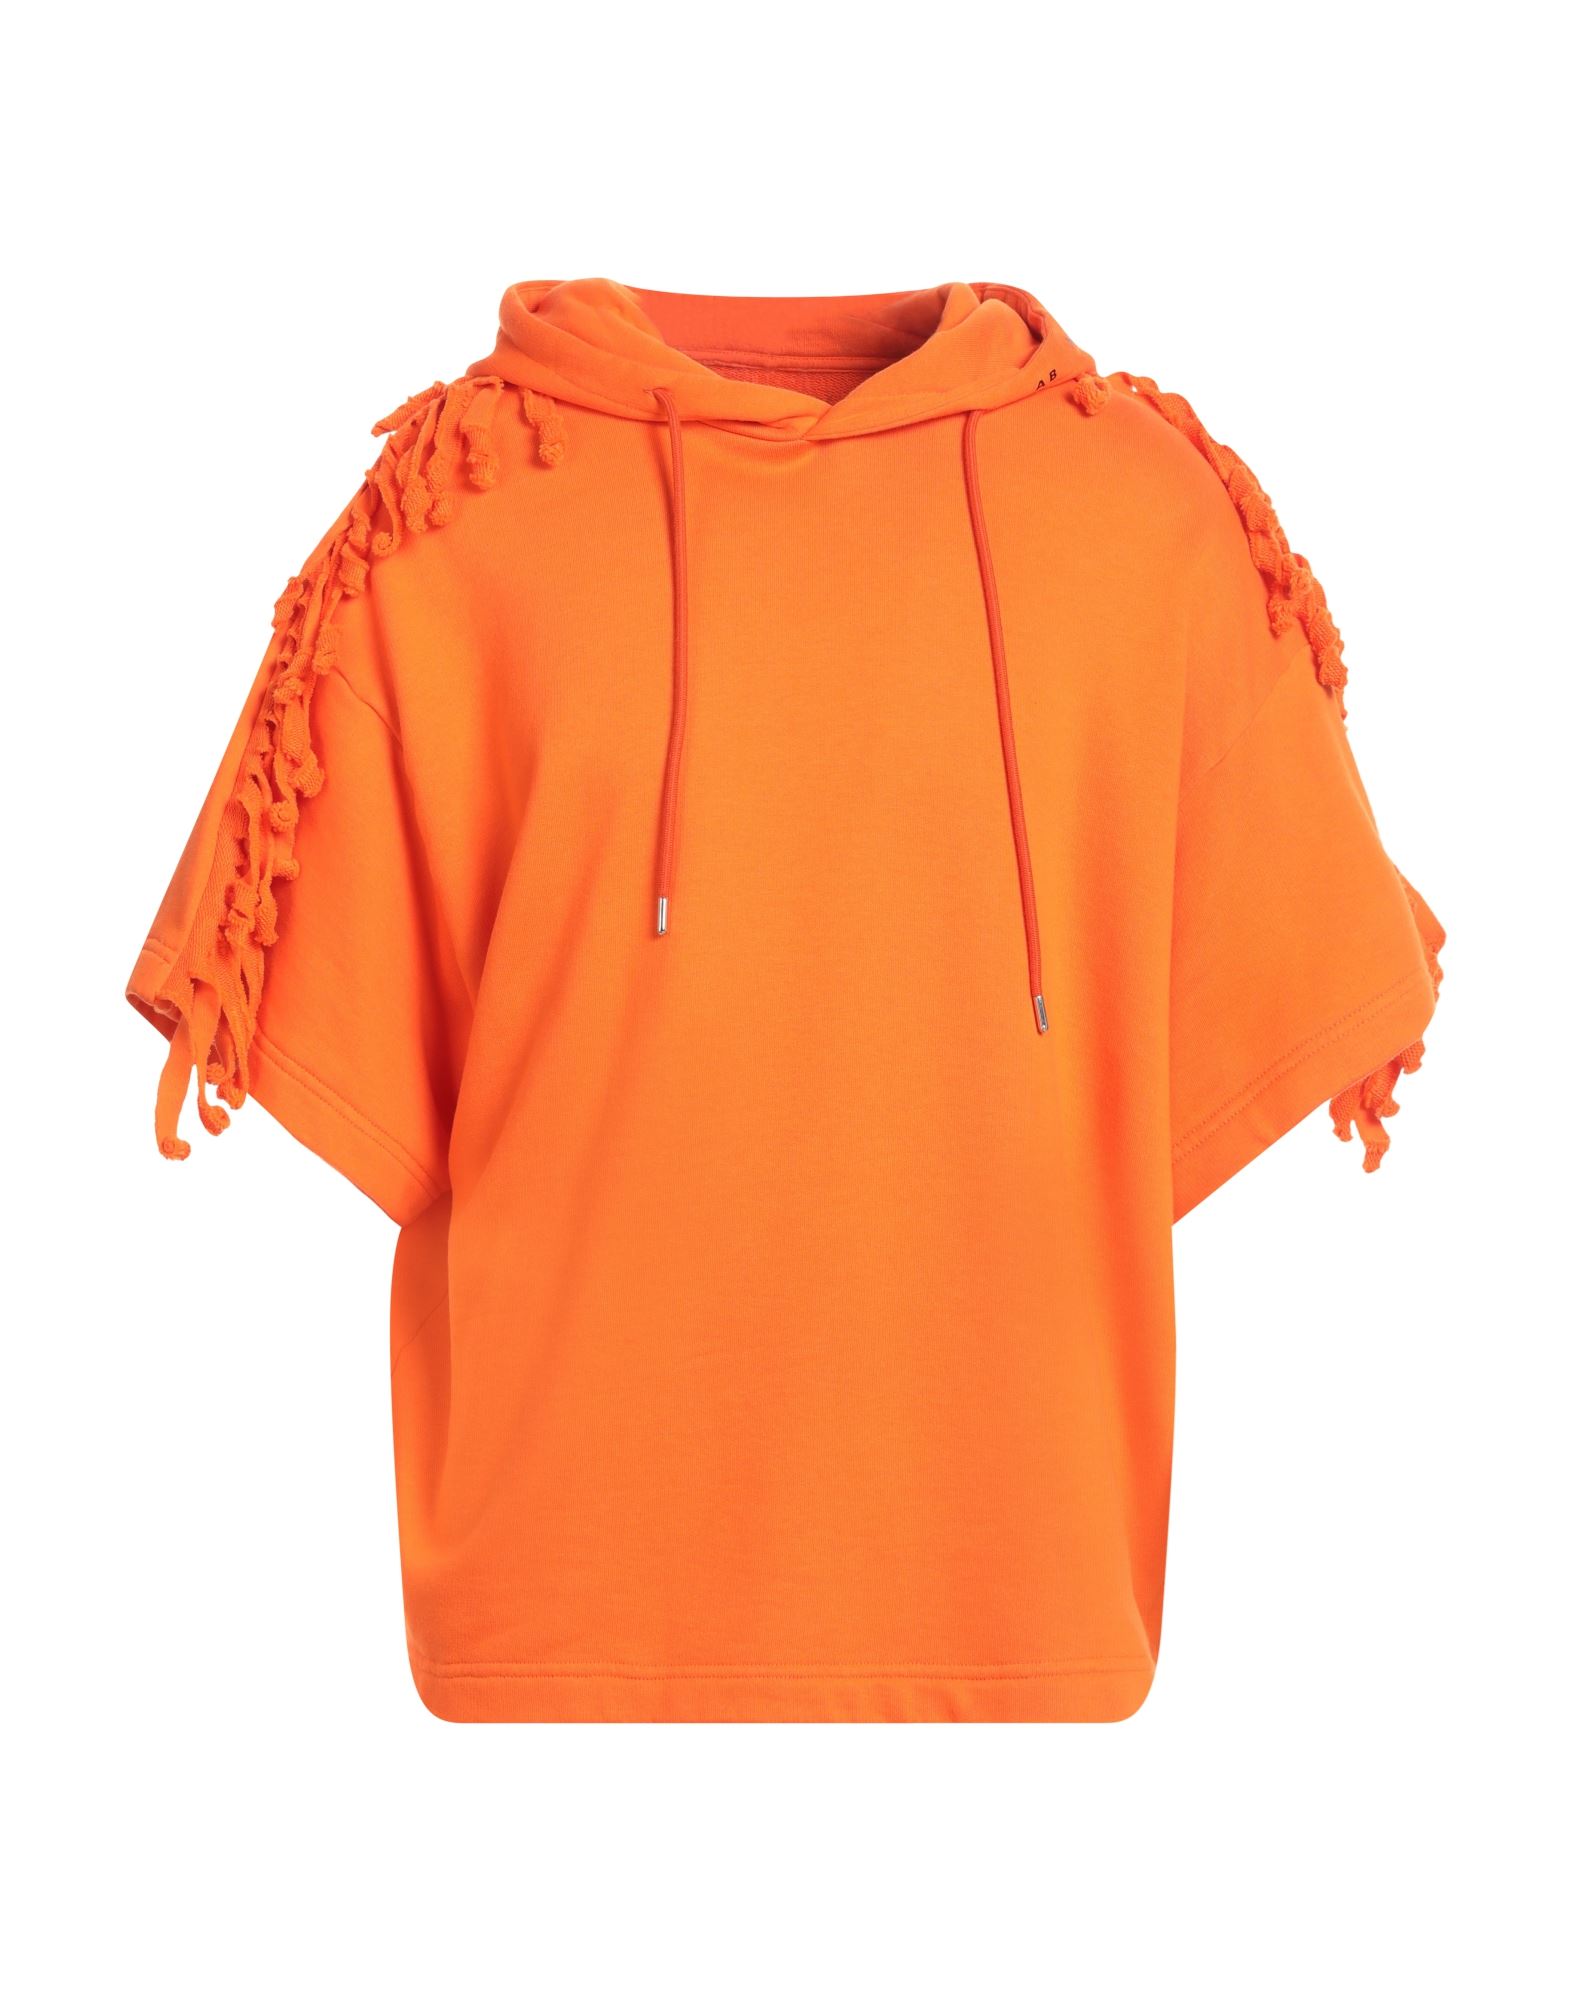 A BETTER MISTAKE Sweatshirt Herren Orange von A BETTER MISTAKE